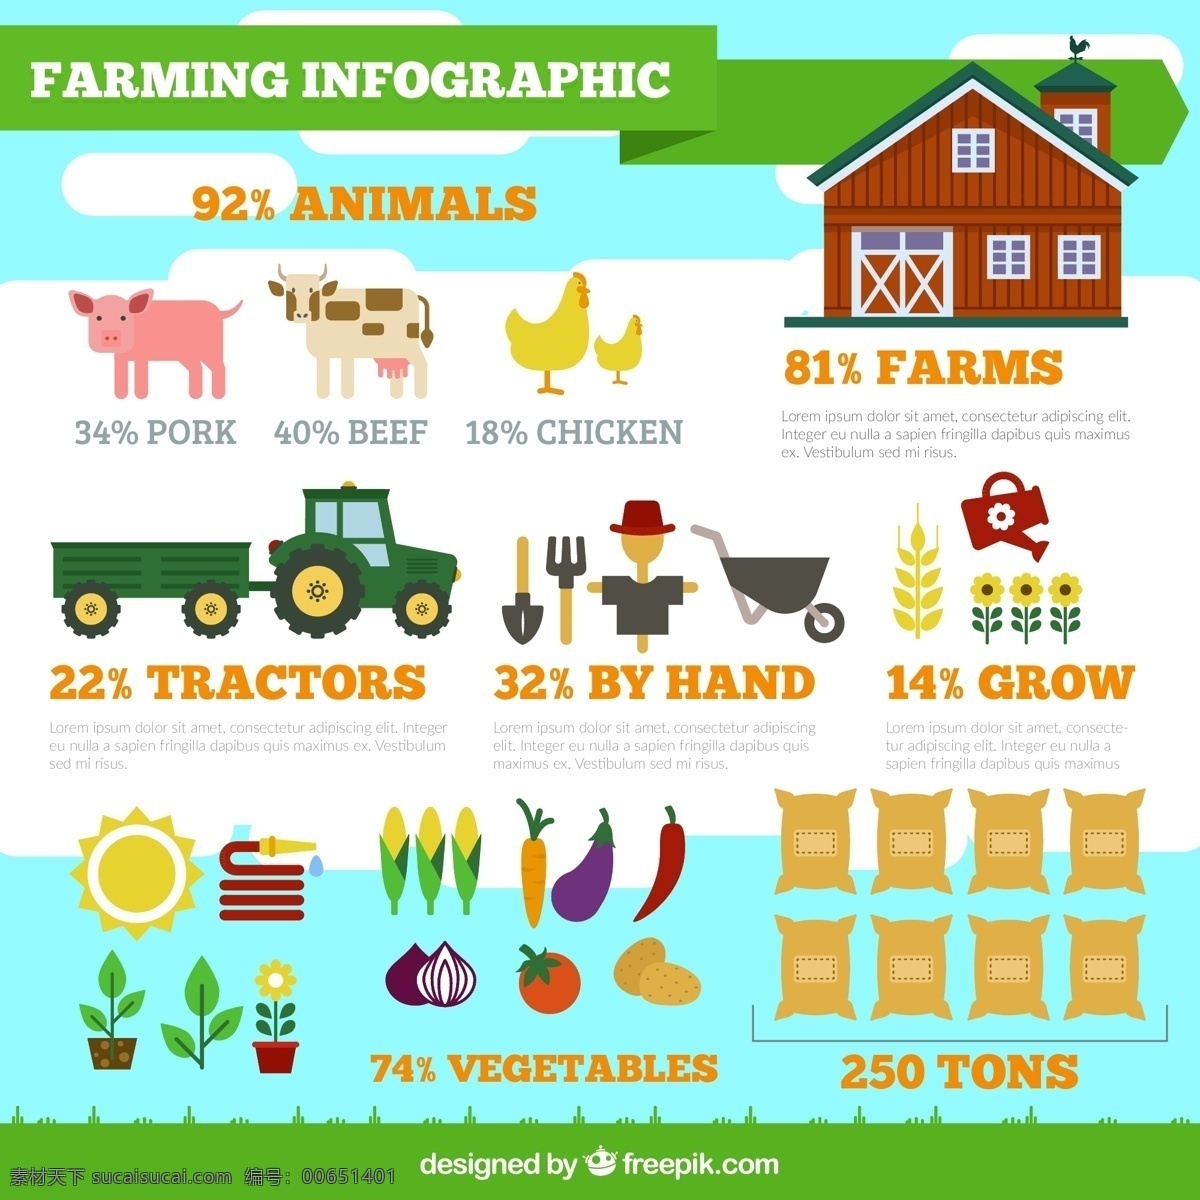 创意 有机 农场 信息 图 矢量 蔬菜 绿色 健康 卡通 栽种 定制